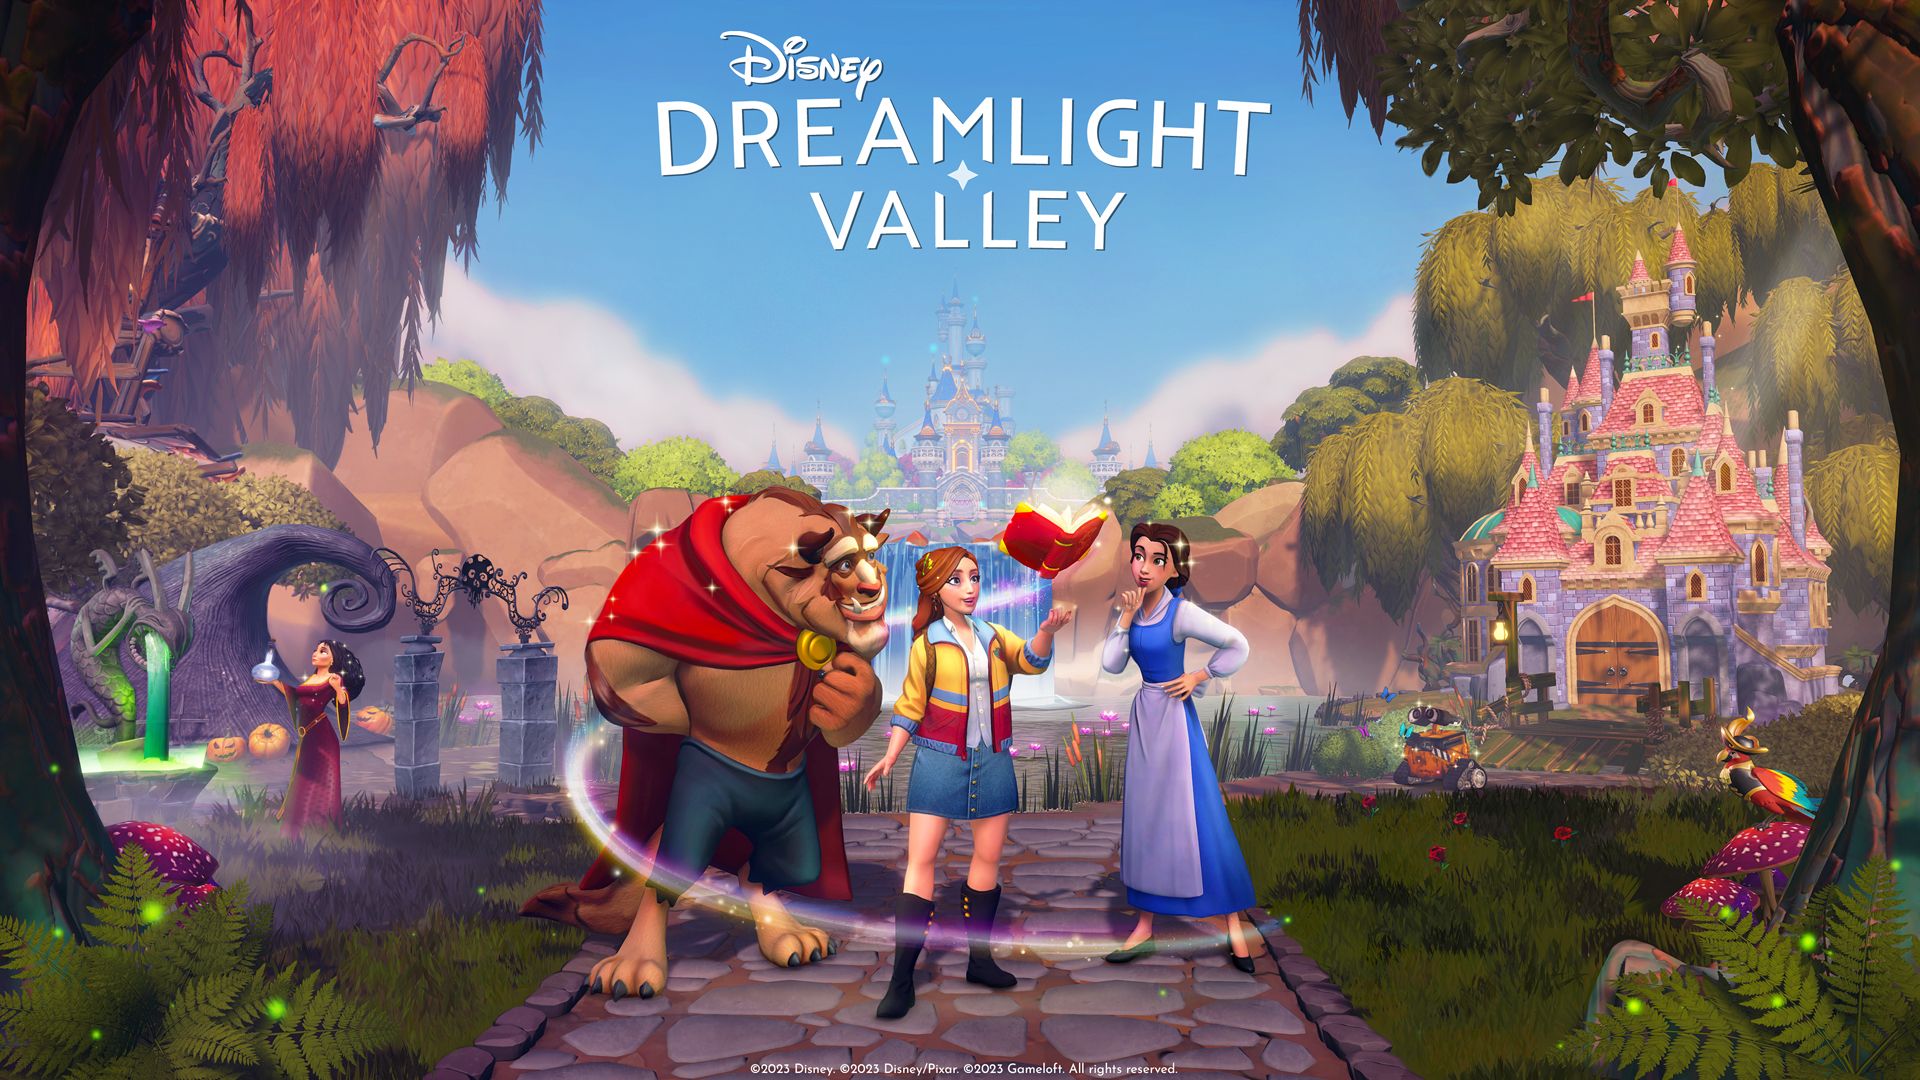 Обновление рекламного арта Disney Dreamlight Valley «Очарованные приключения»